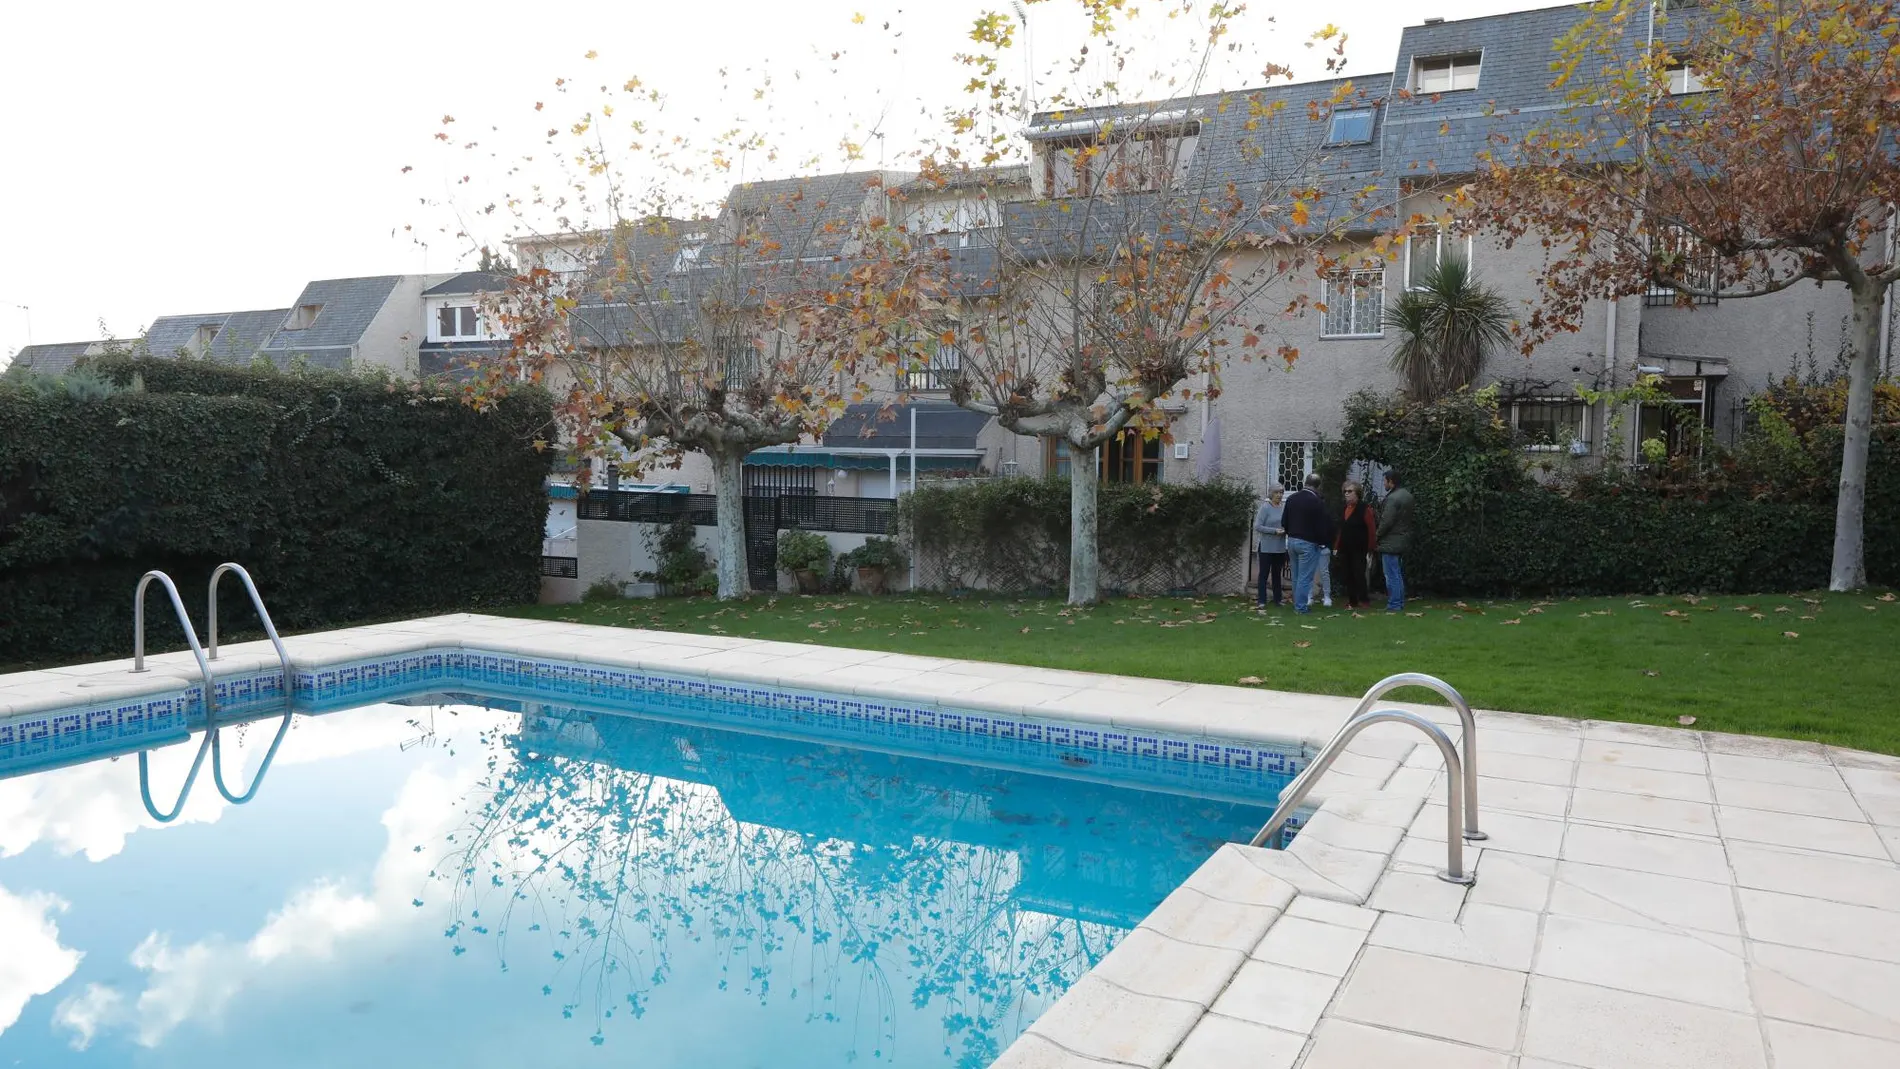 Un hombre de 81 años ha fallecido ahogado en la piscina de una urbanización situada en el municipio valenciano de la Pobla de Vallbona